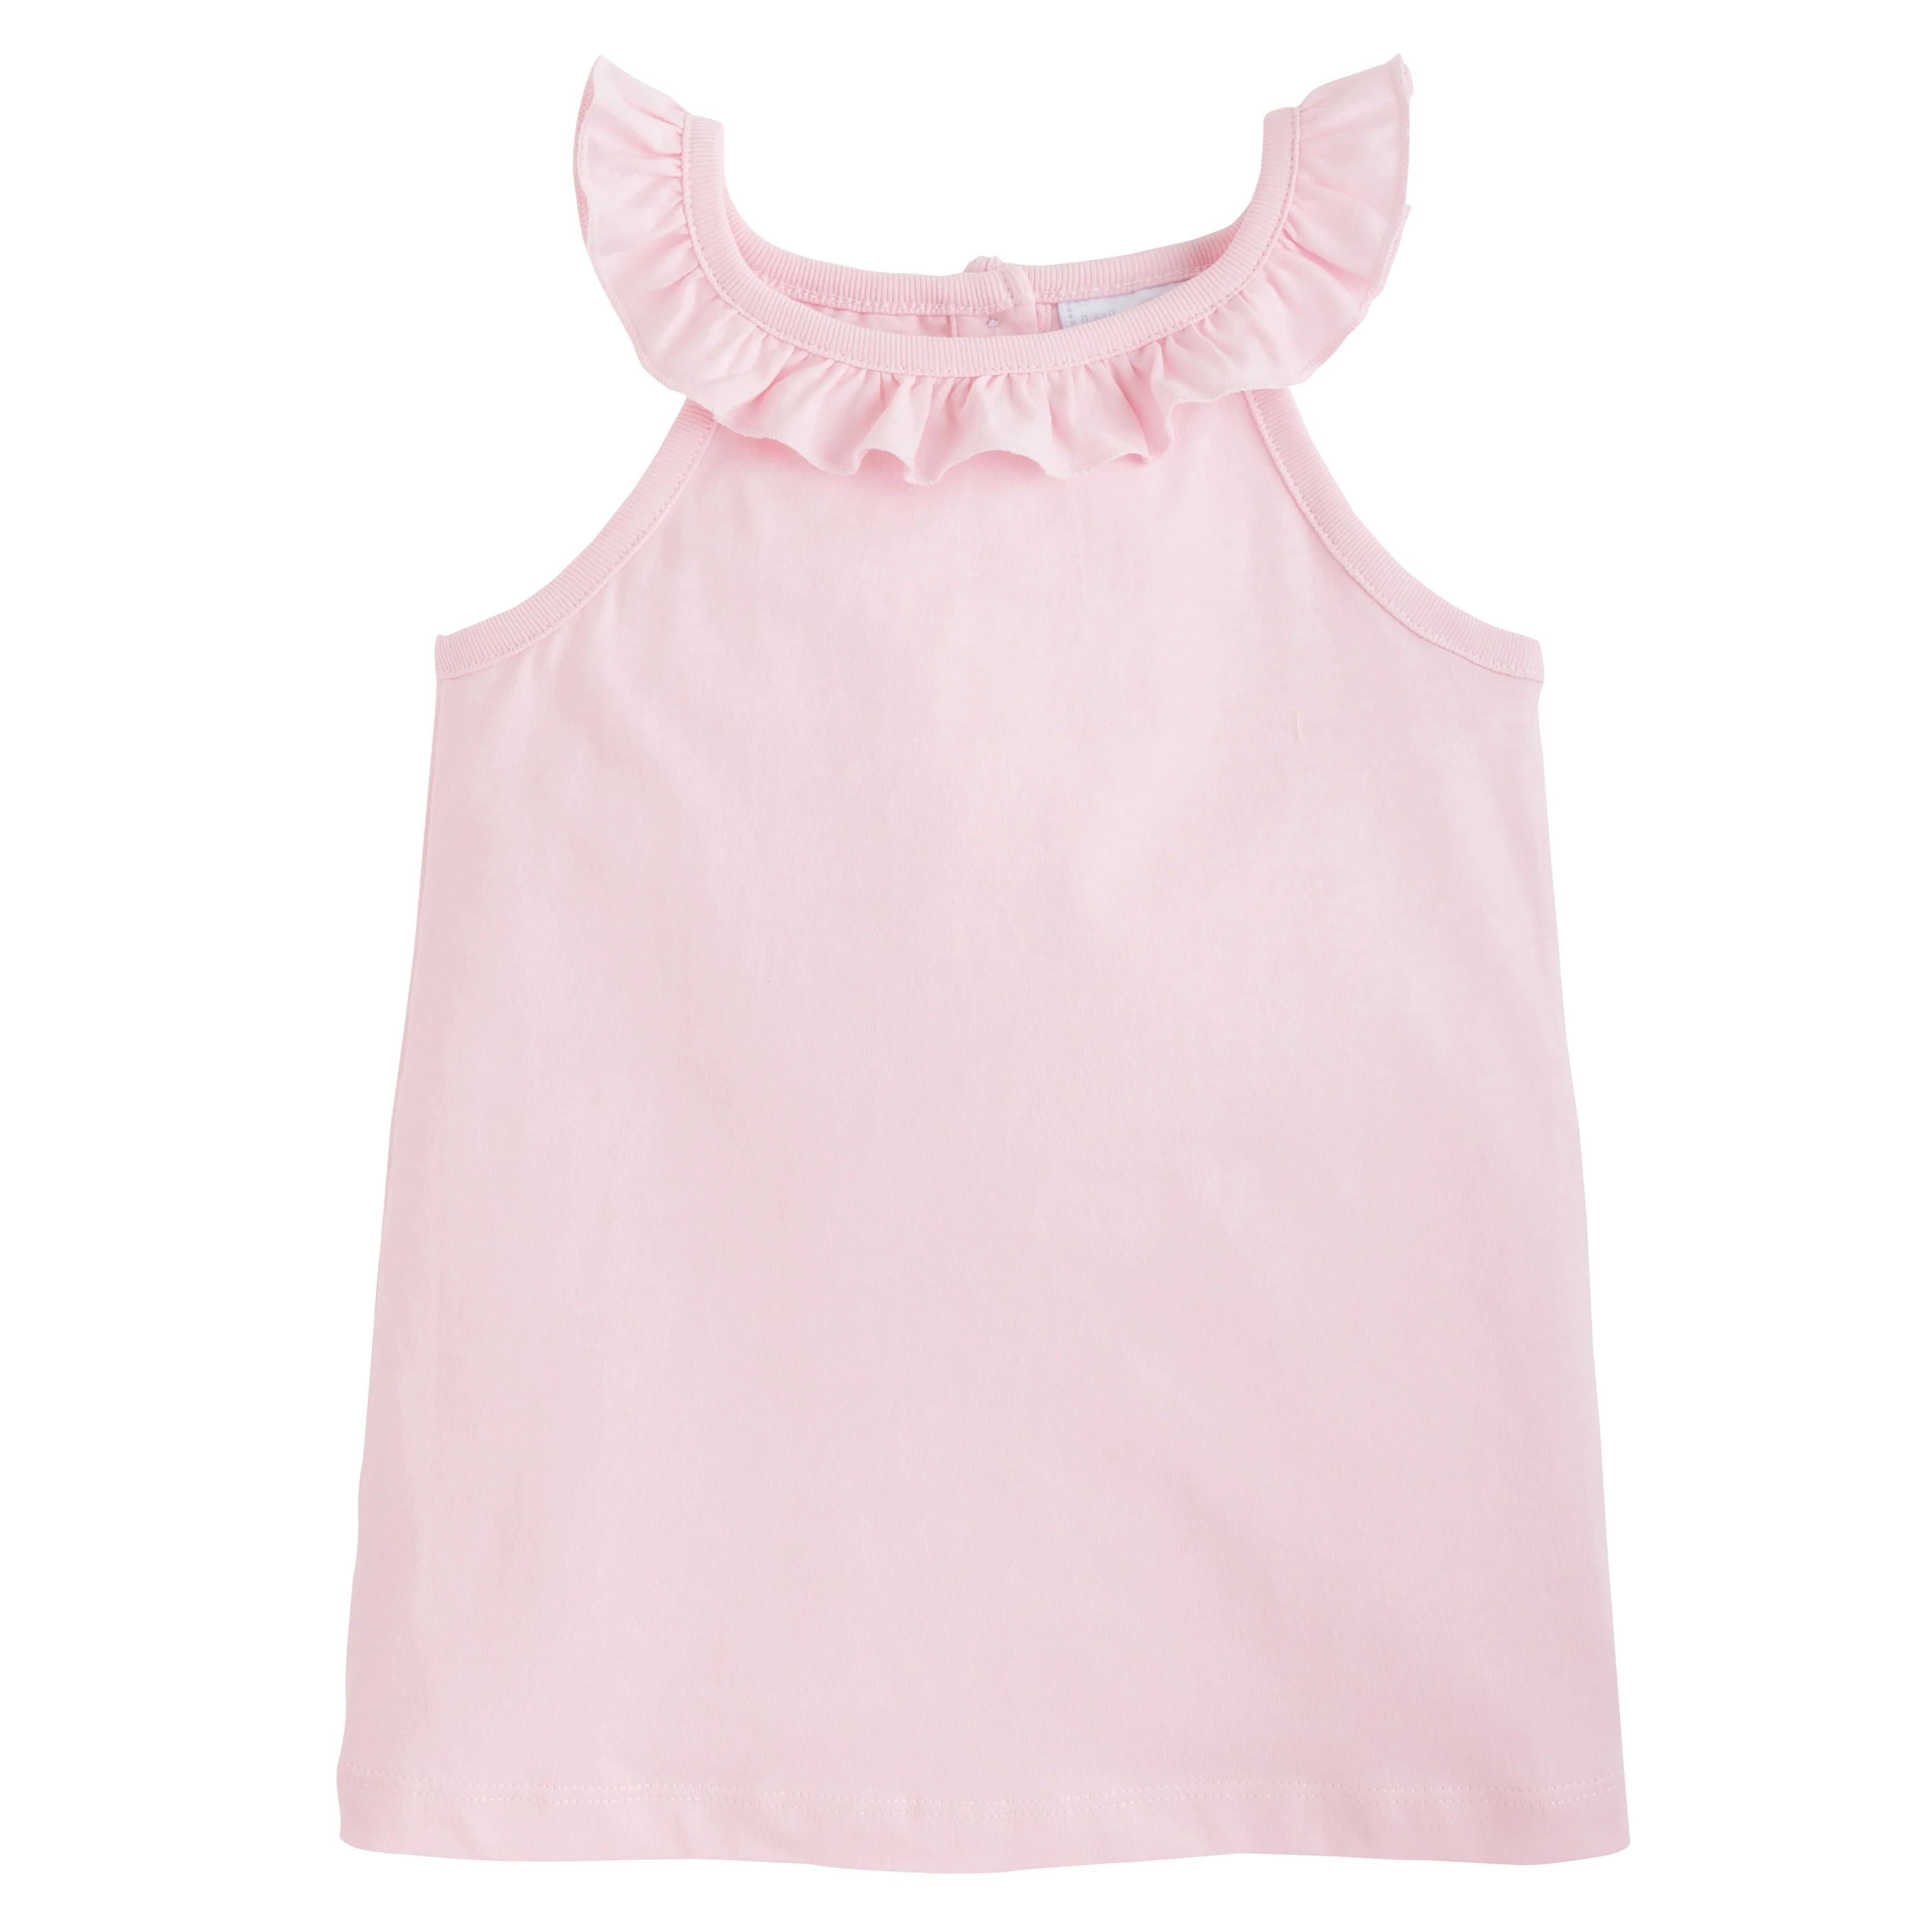 Little Girl Ruffle Top - Kids Pink Tank Top | Little English